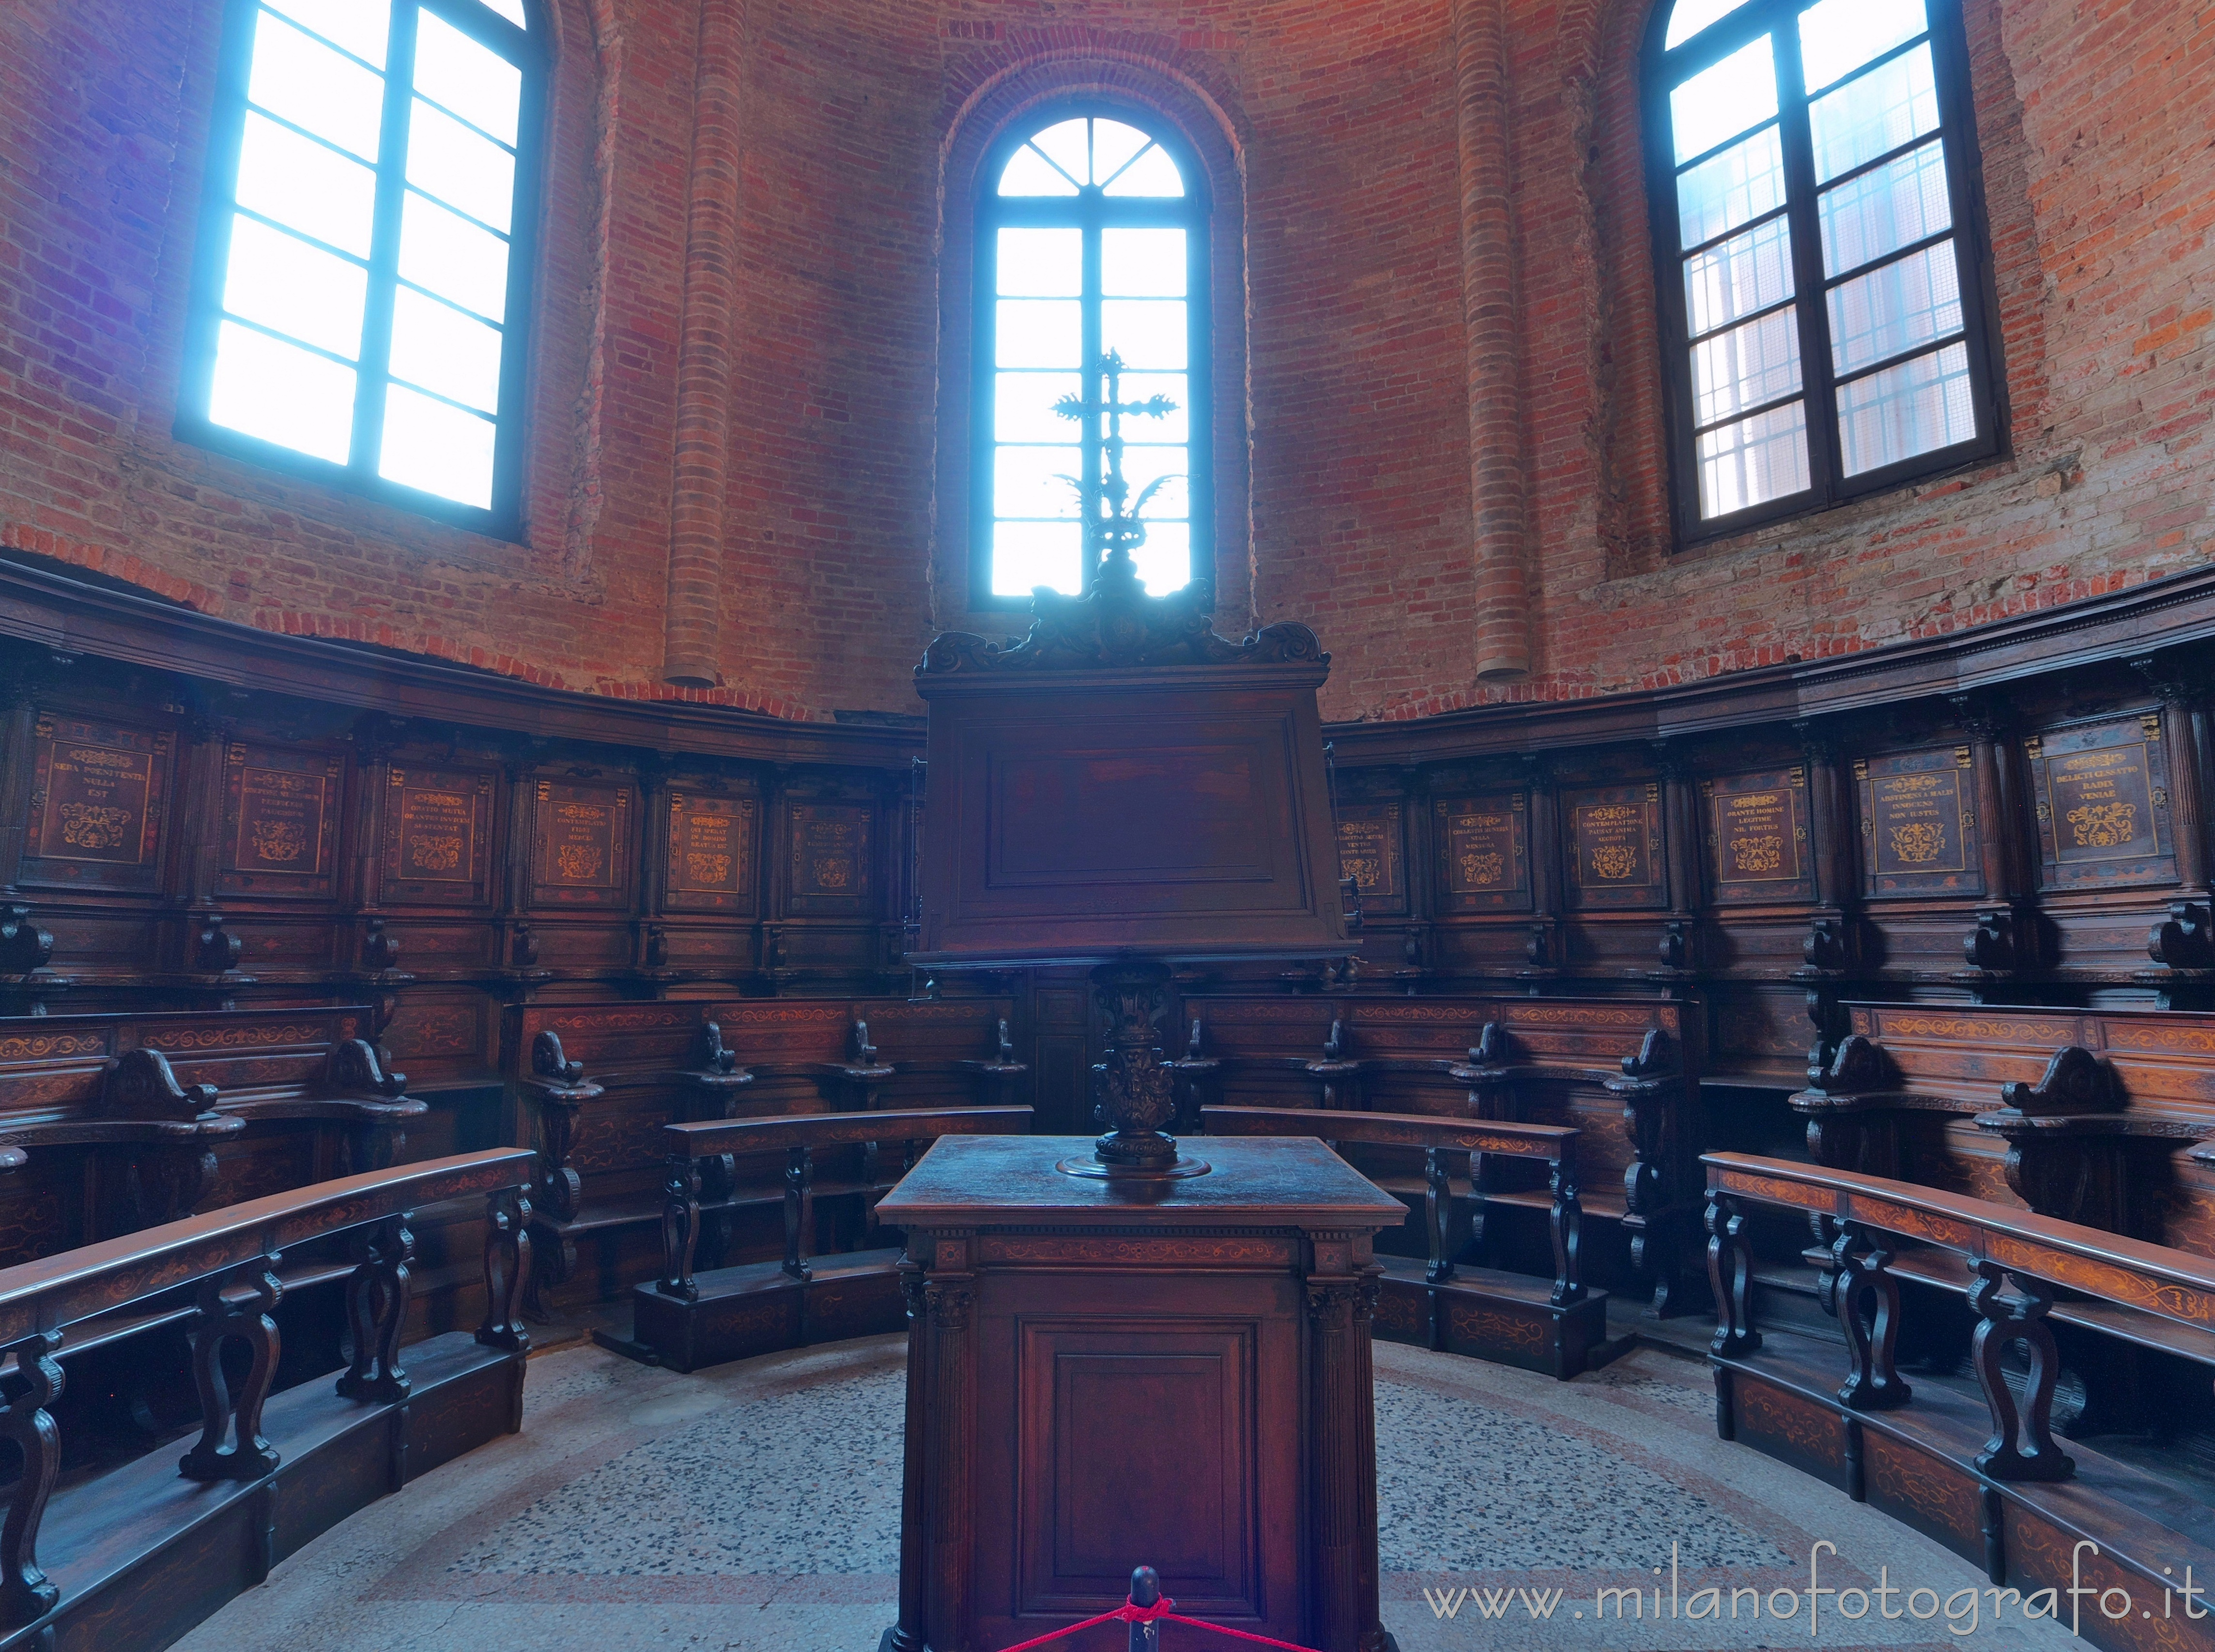 Milano: Coro nell'abside della Basilica di San Simpliciano - Milano